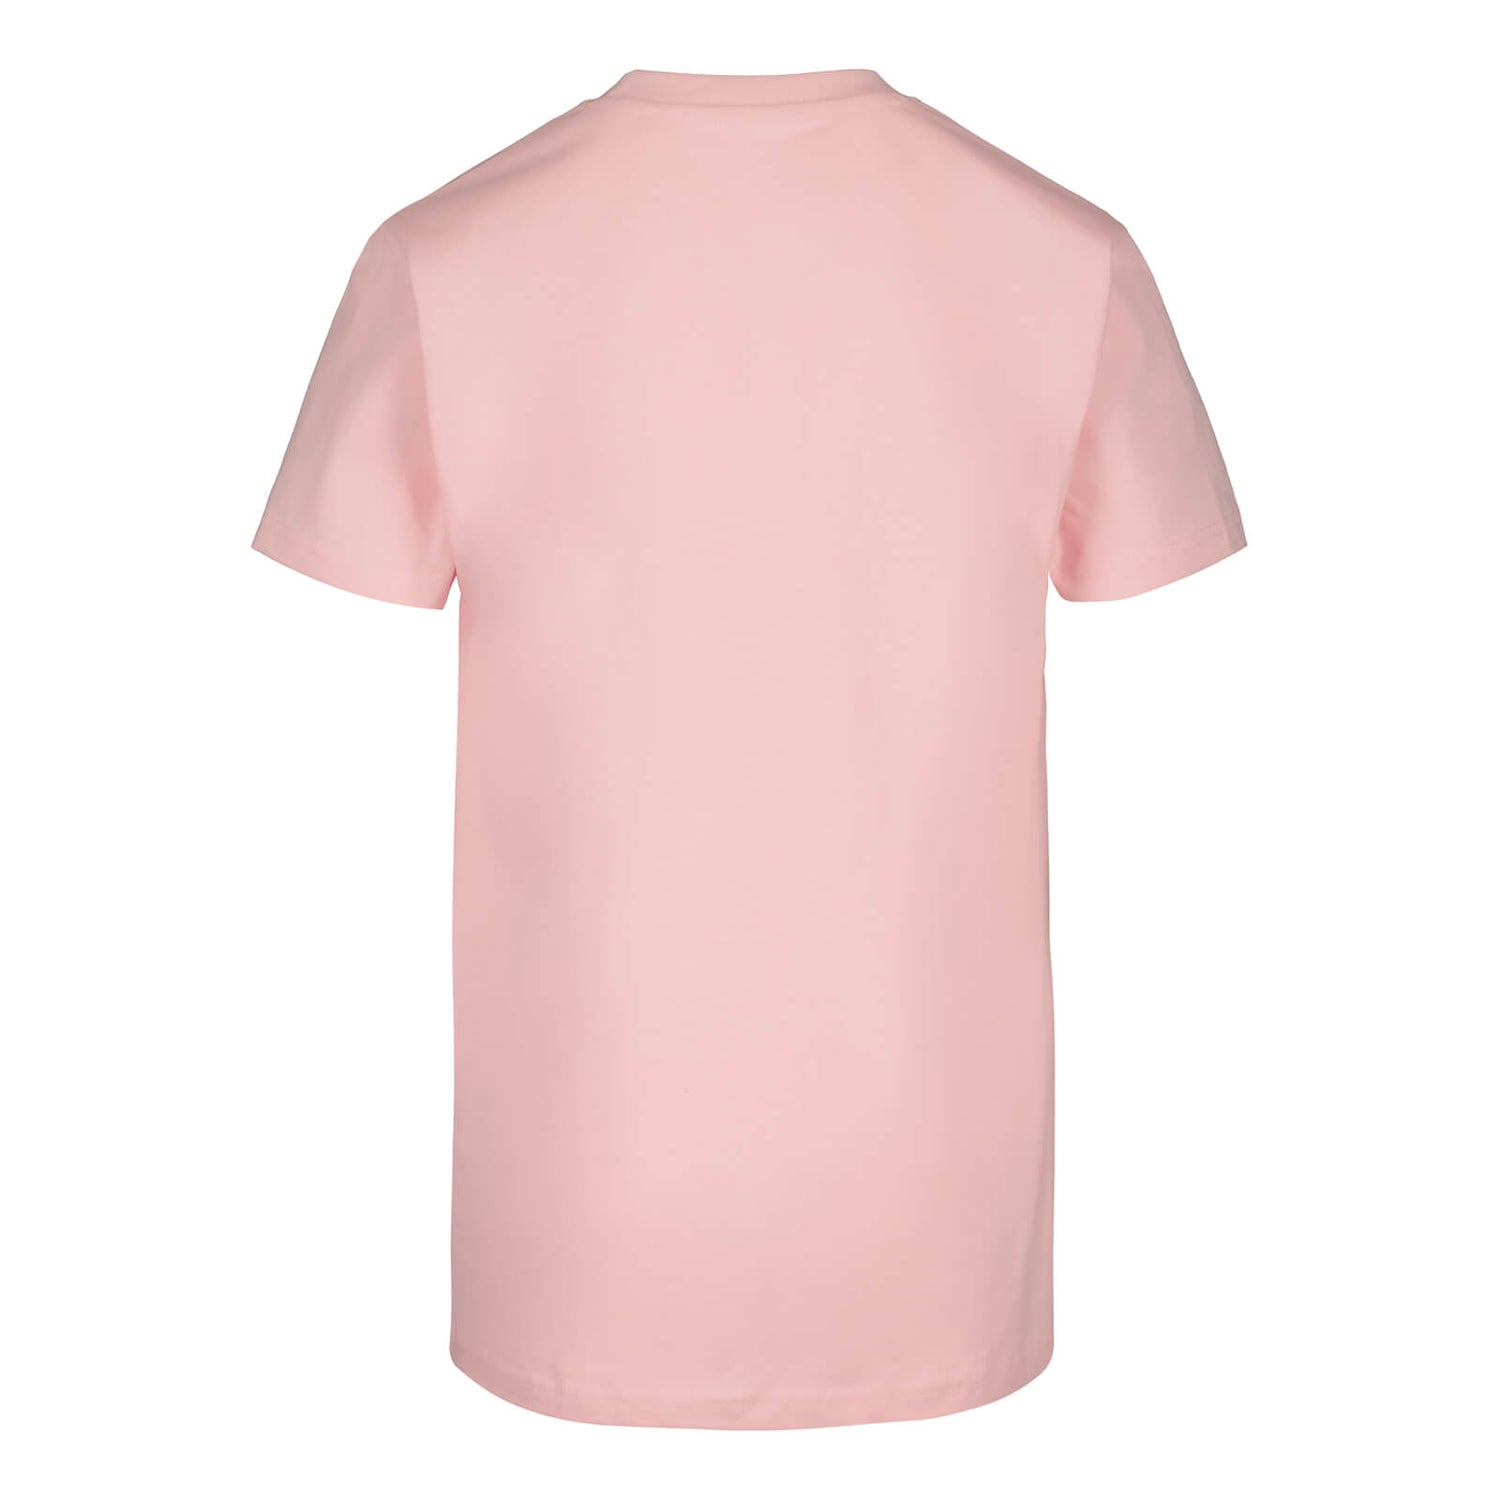 GOAT Pukki T-shirt, Pink, Children